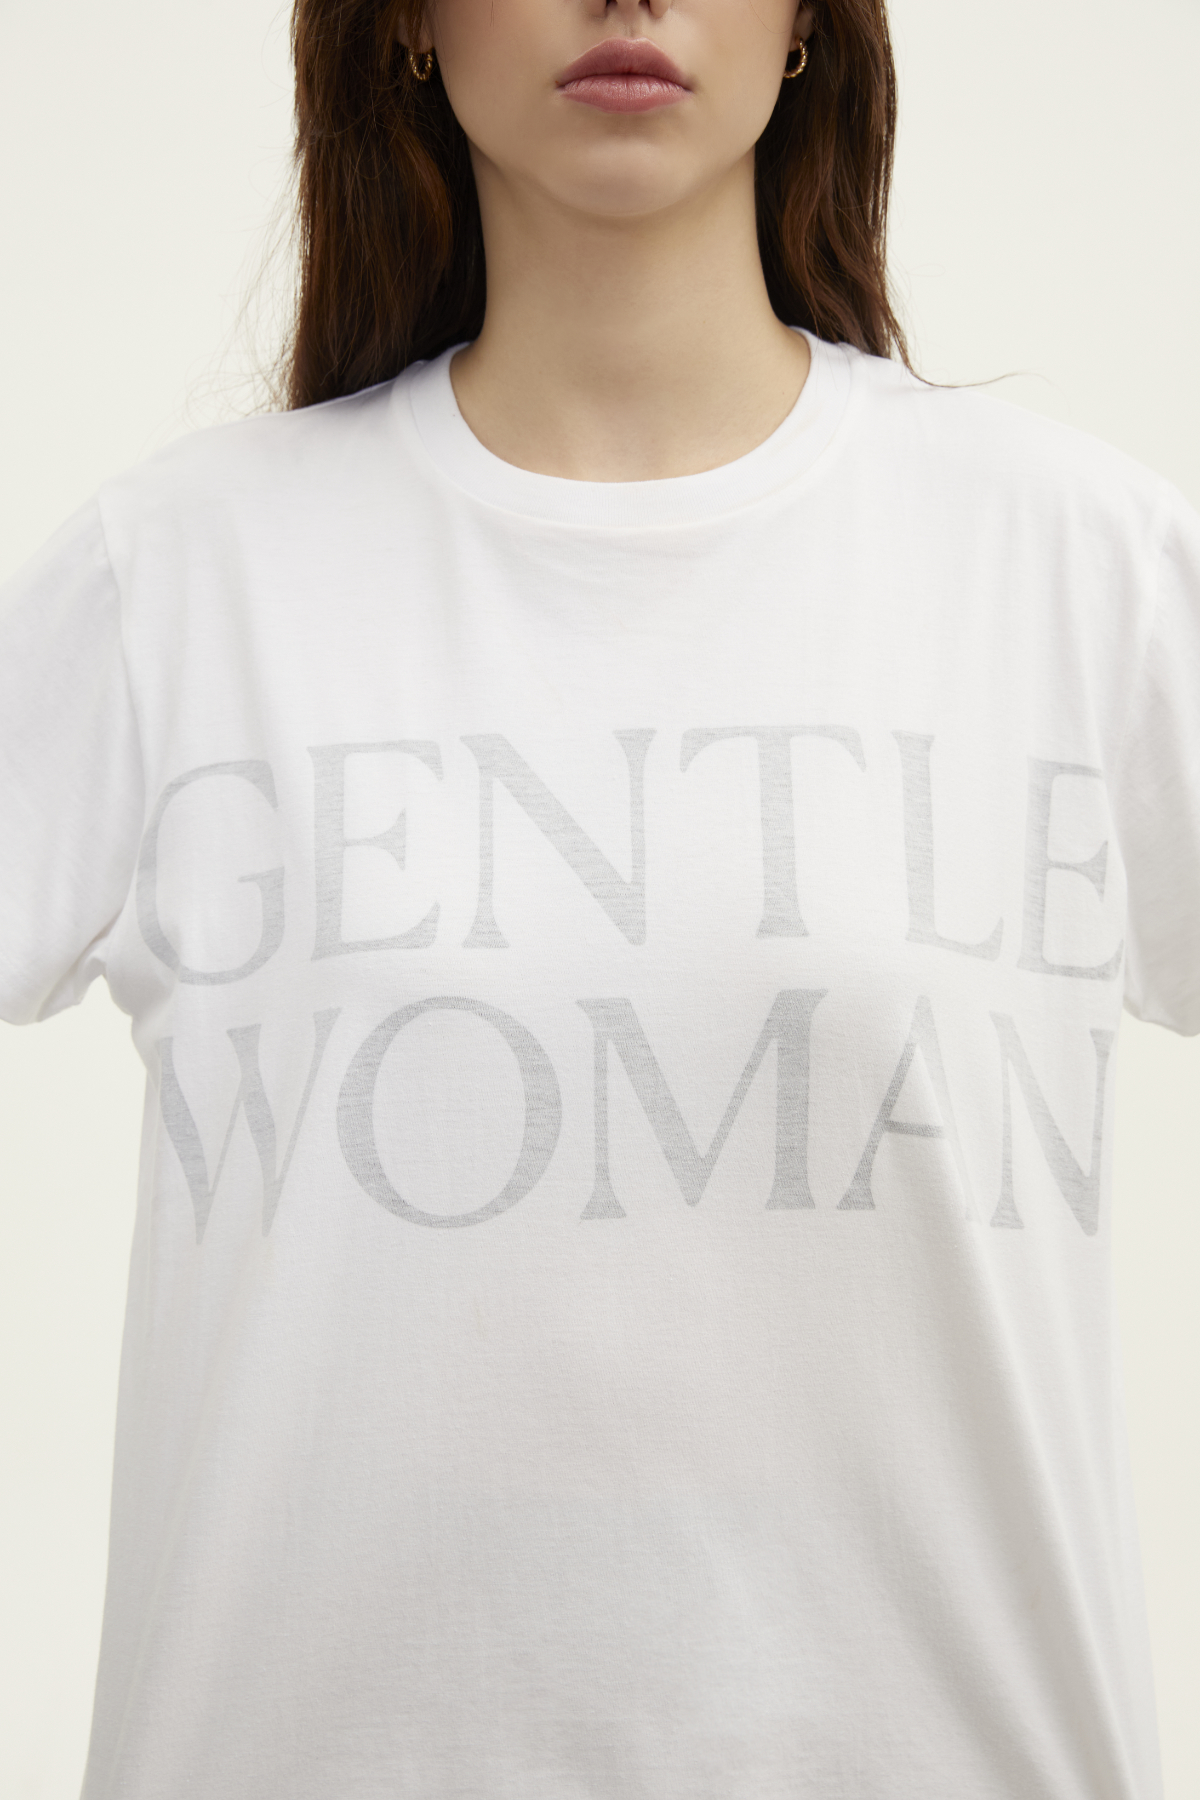 GENTLEWOMAN Faded Logo T-Shirt - GTT263 | GENTLEWOMAN